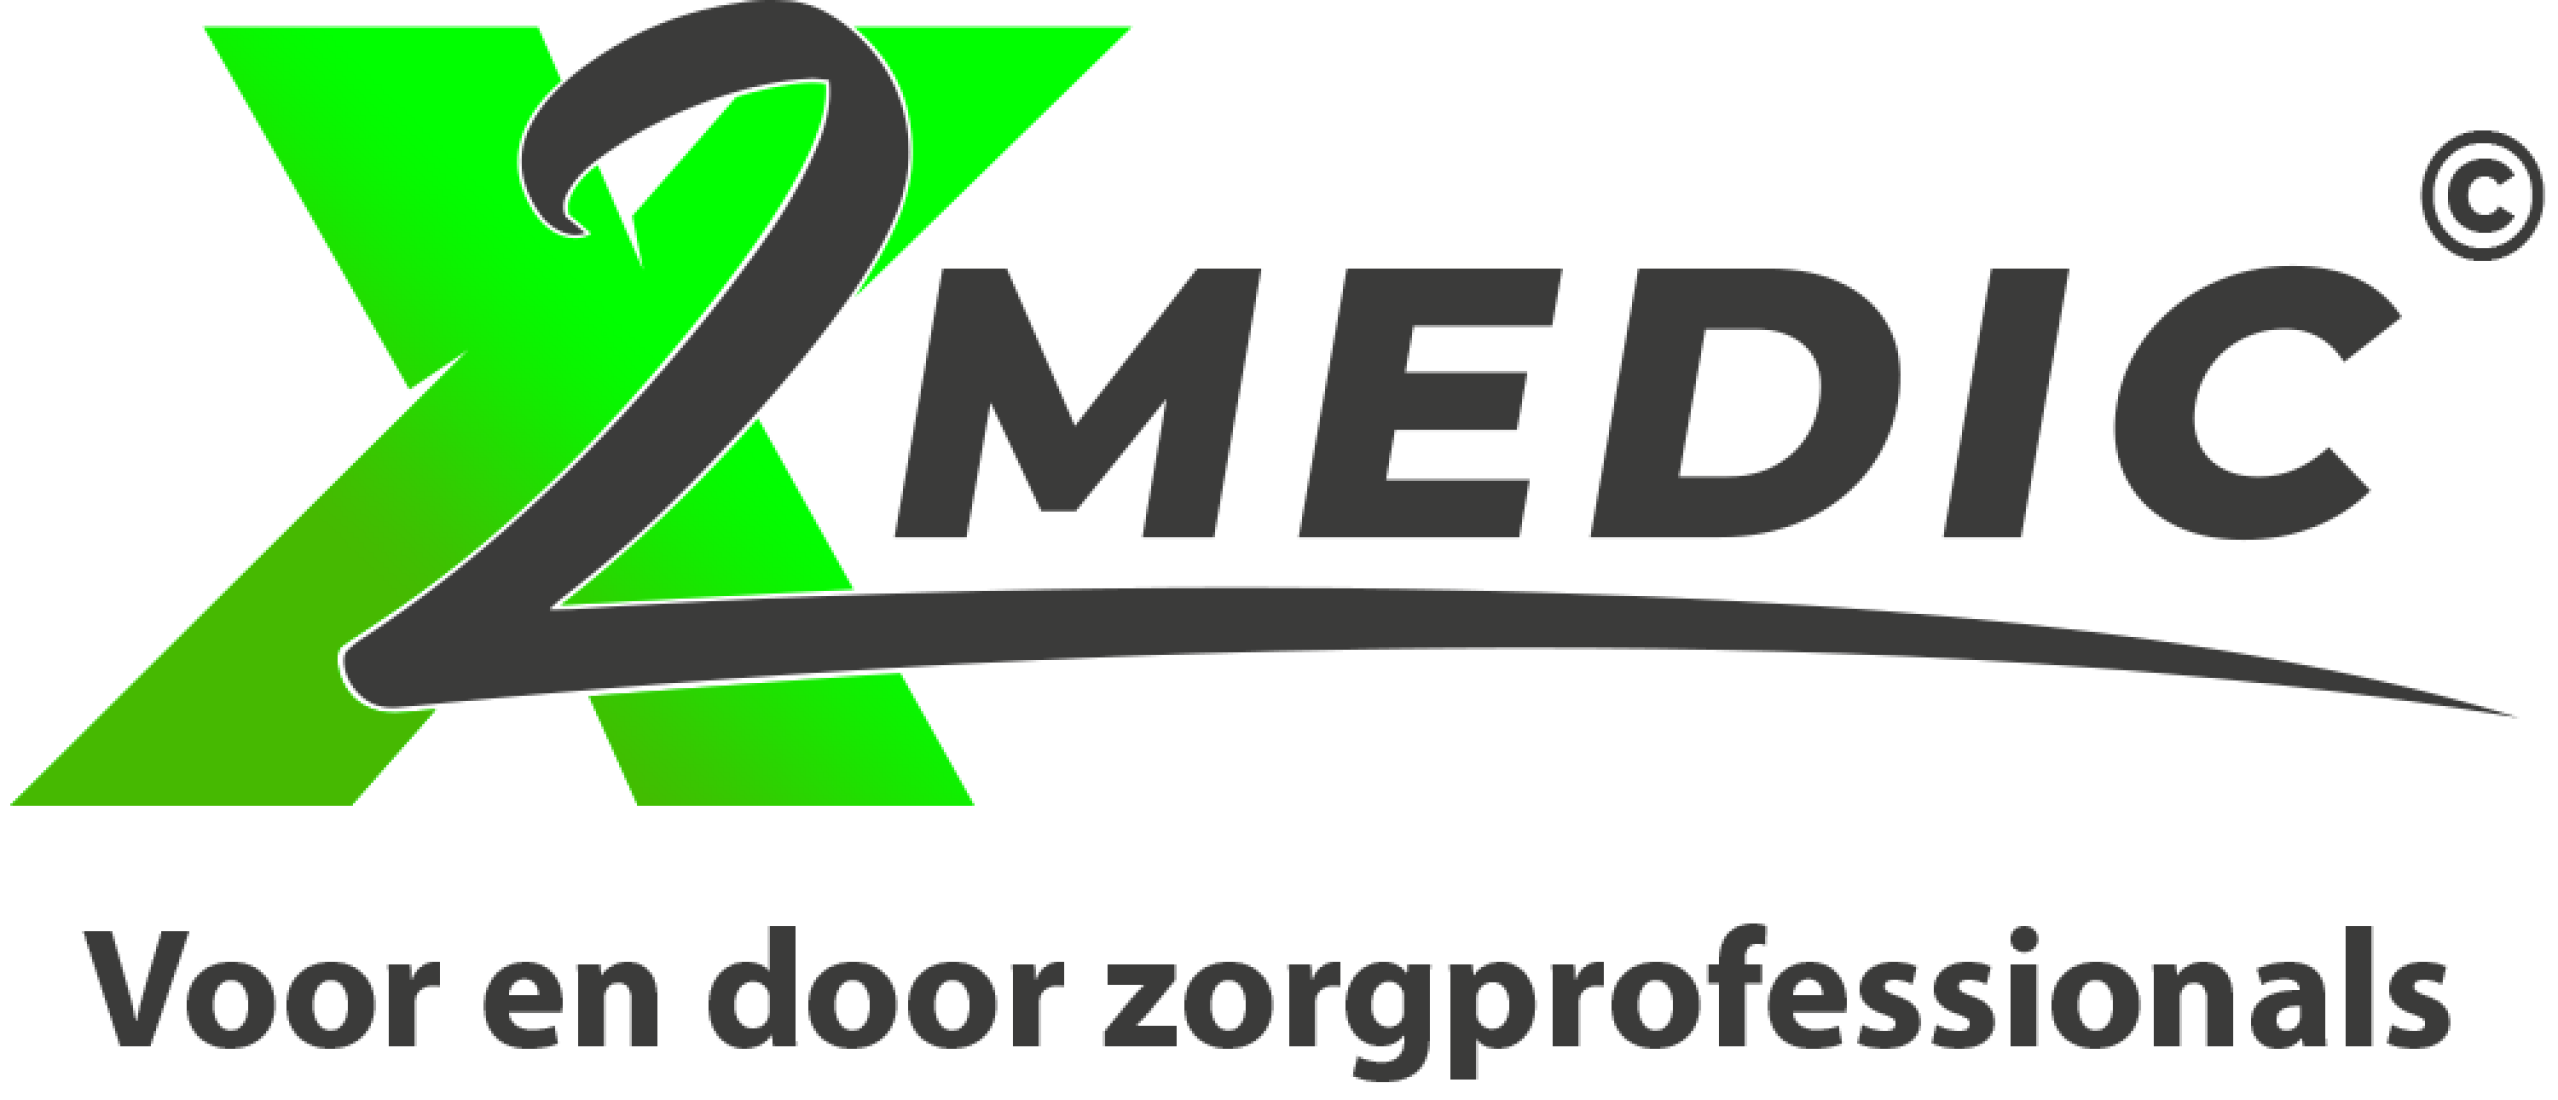 Welke documenten heeft X2Medic nodig?